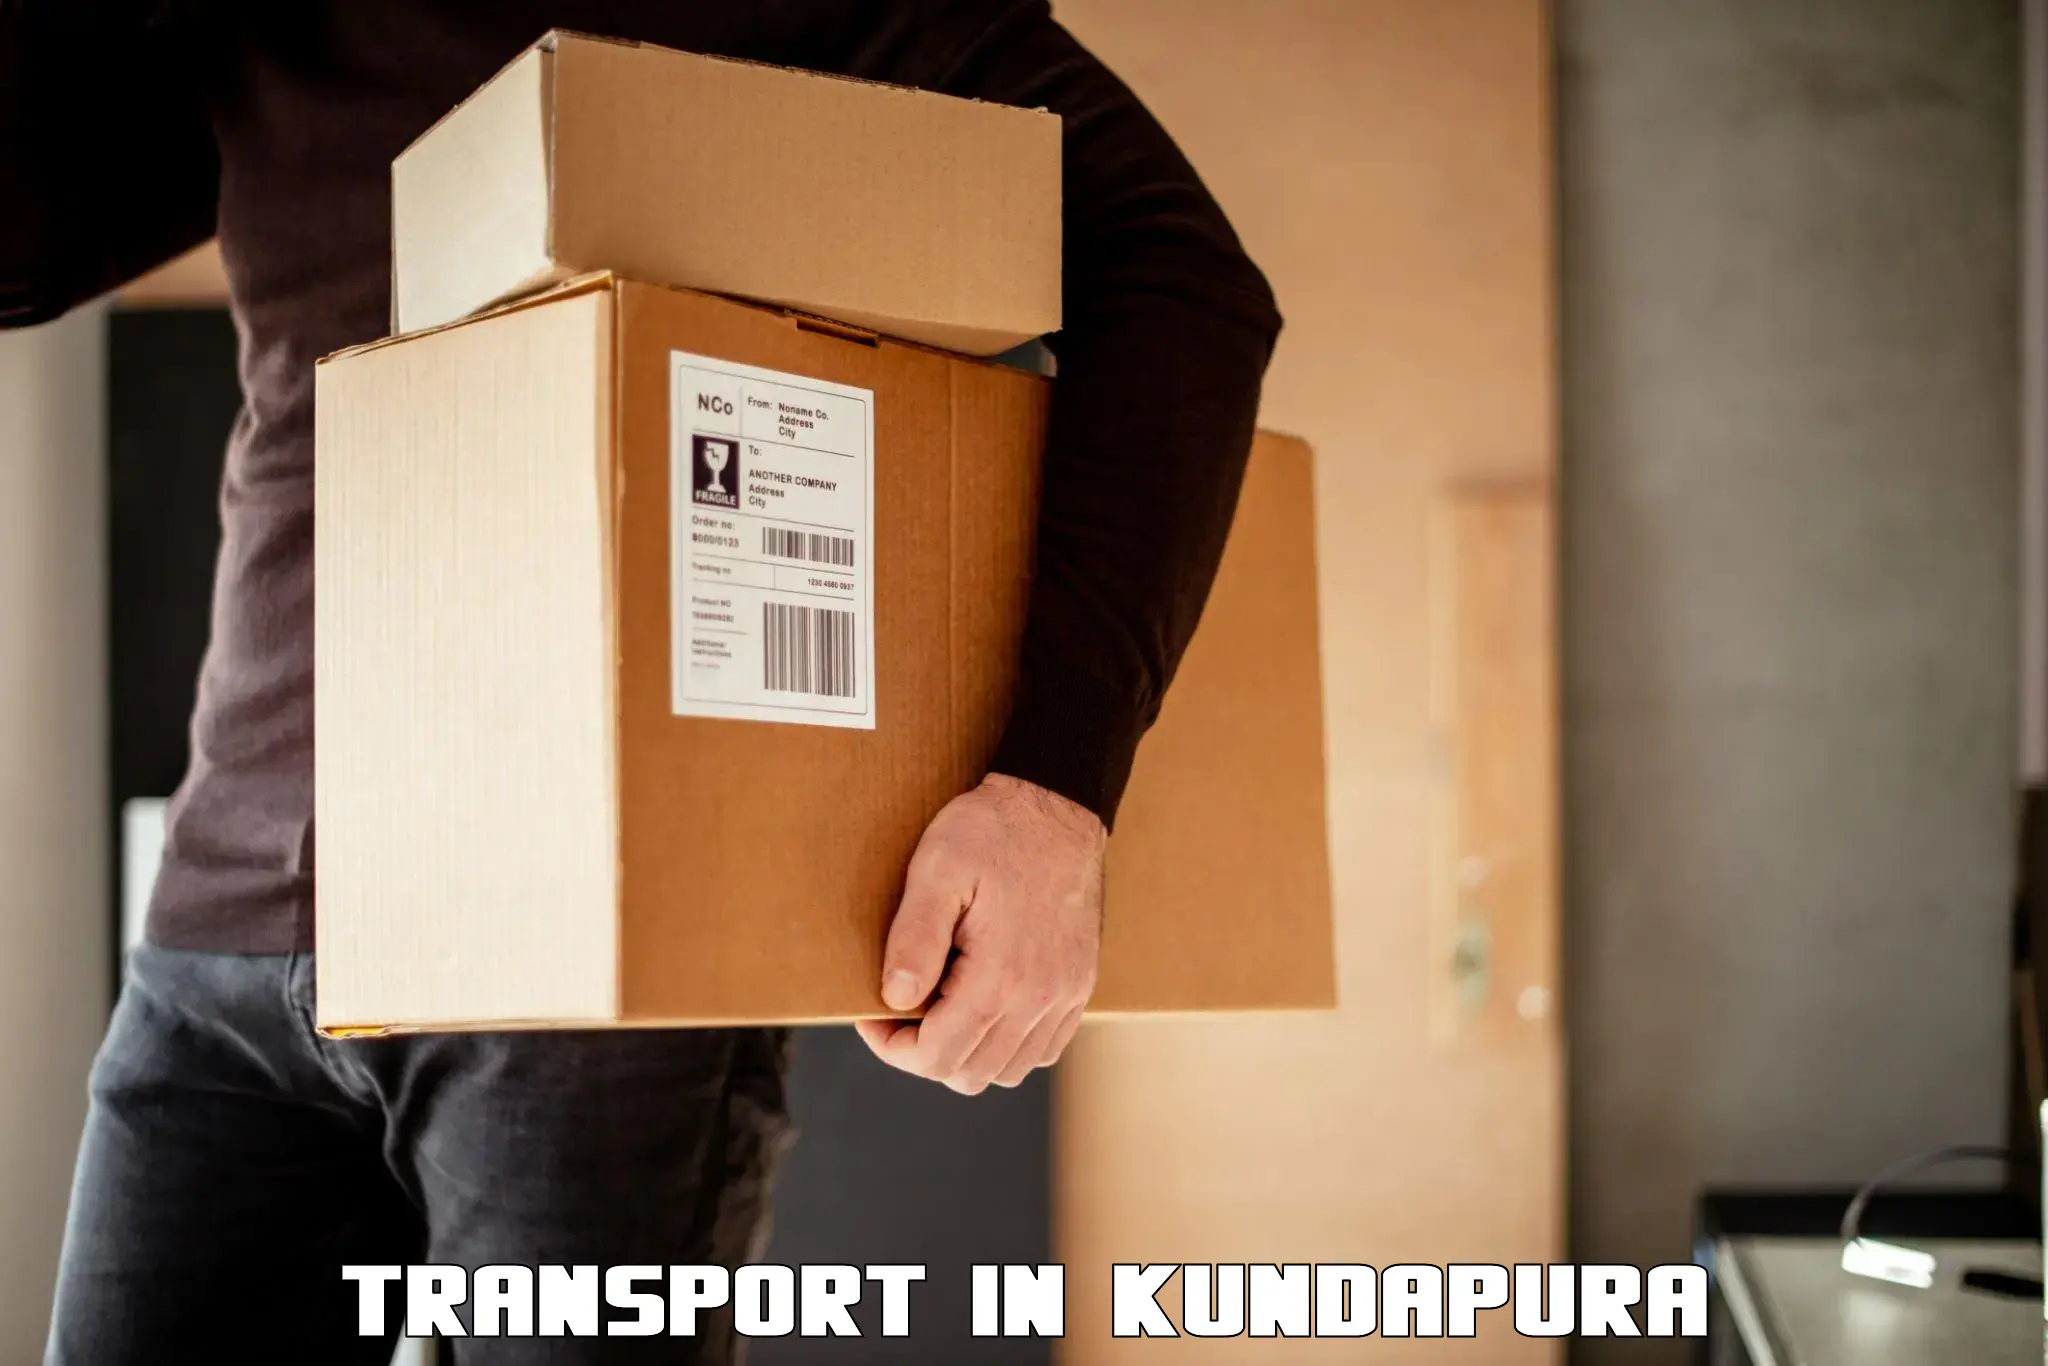 Intercity goods transport in Kundapura